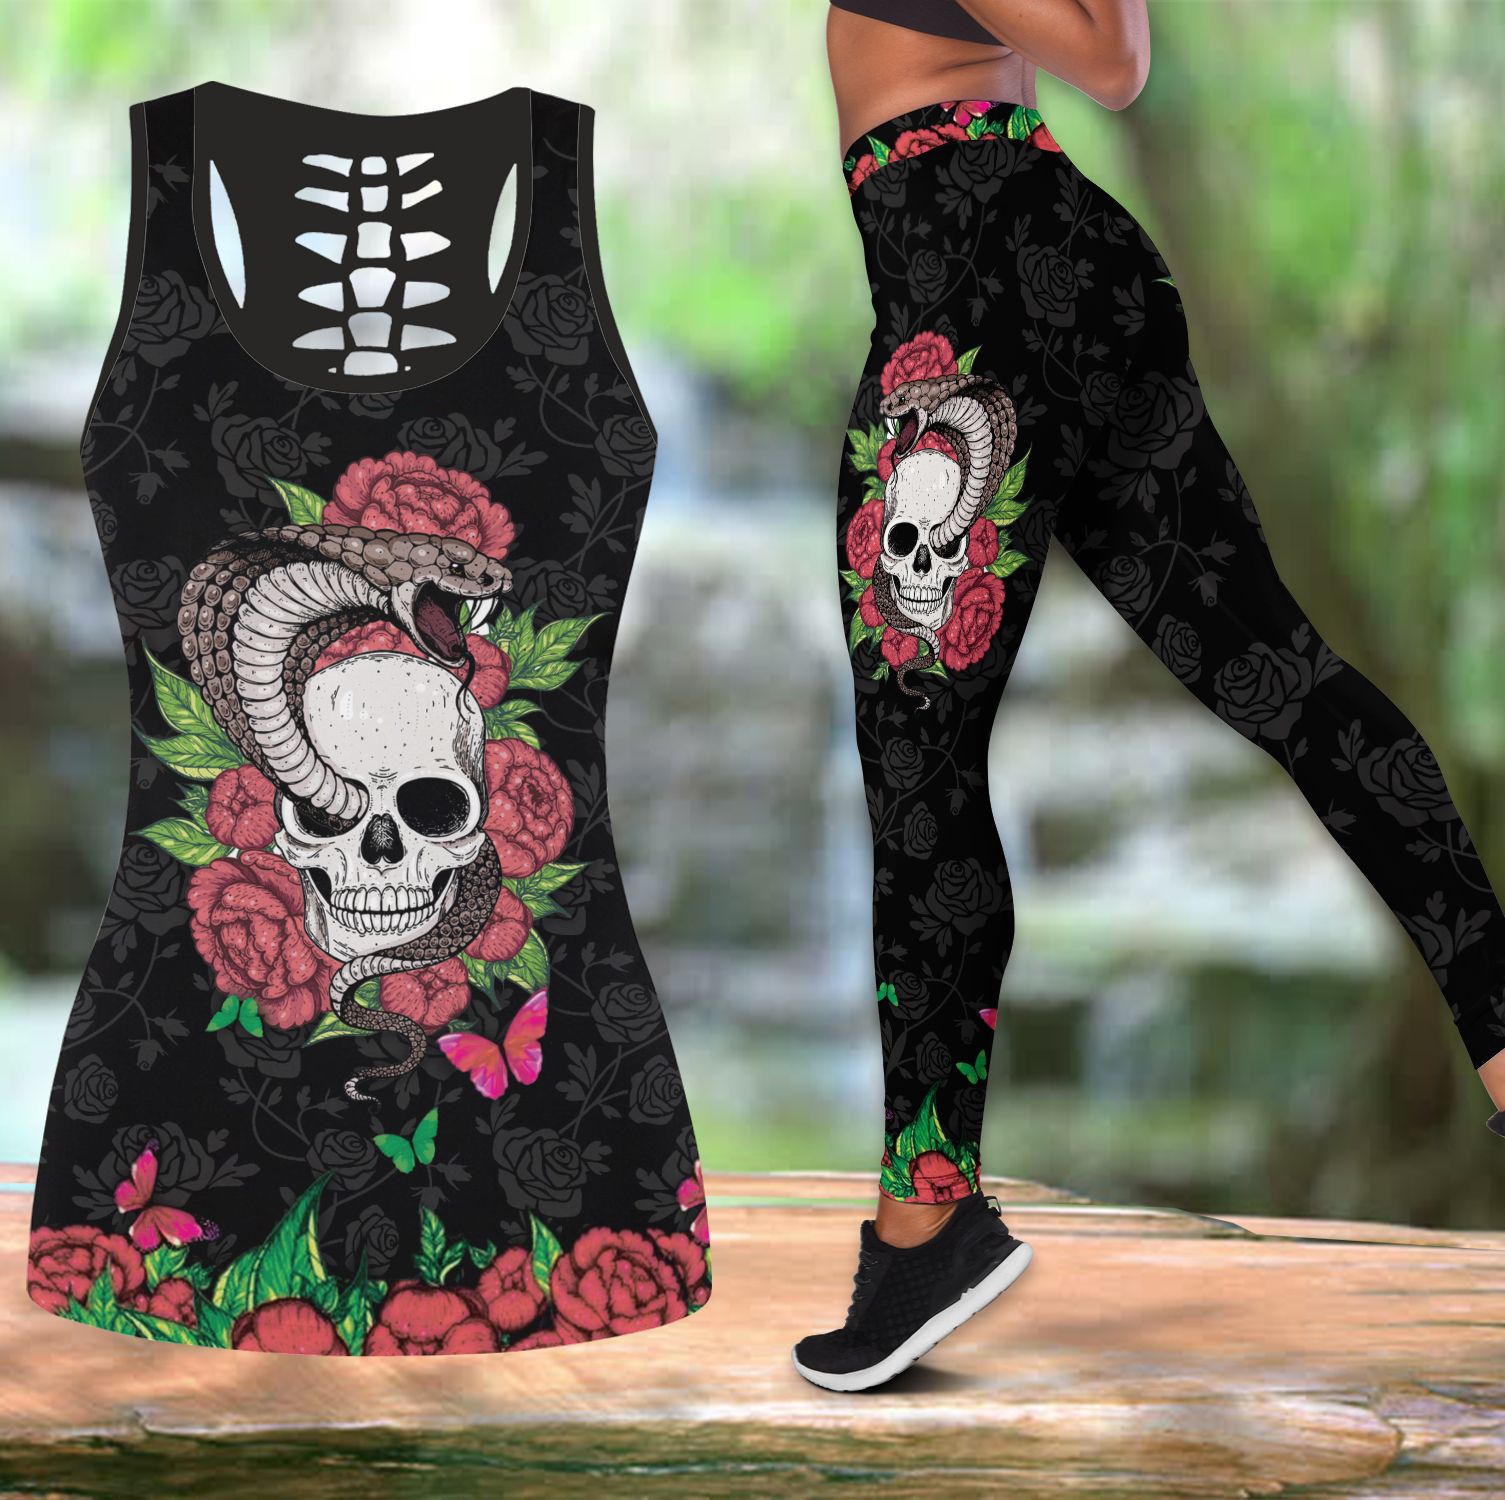 Snake Love Skull 3d all over printed tanktop & legging outfit for women PAN3DSET0033